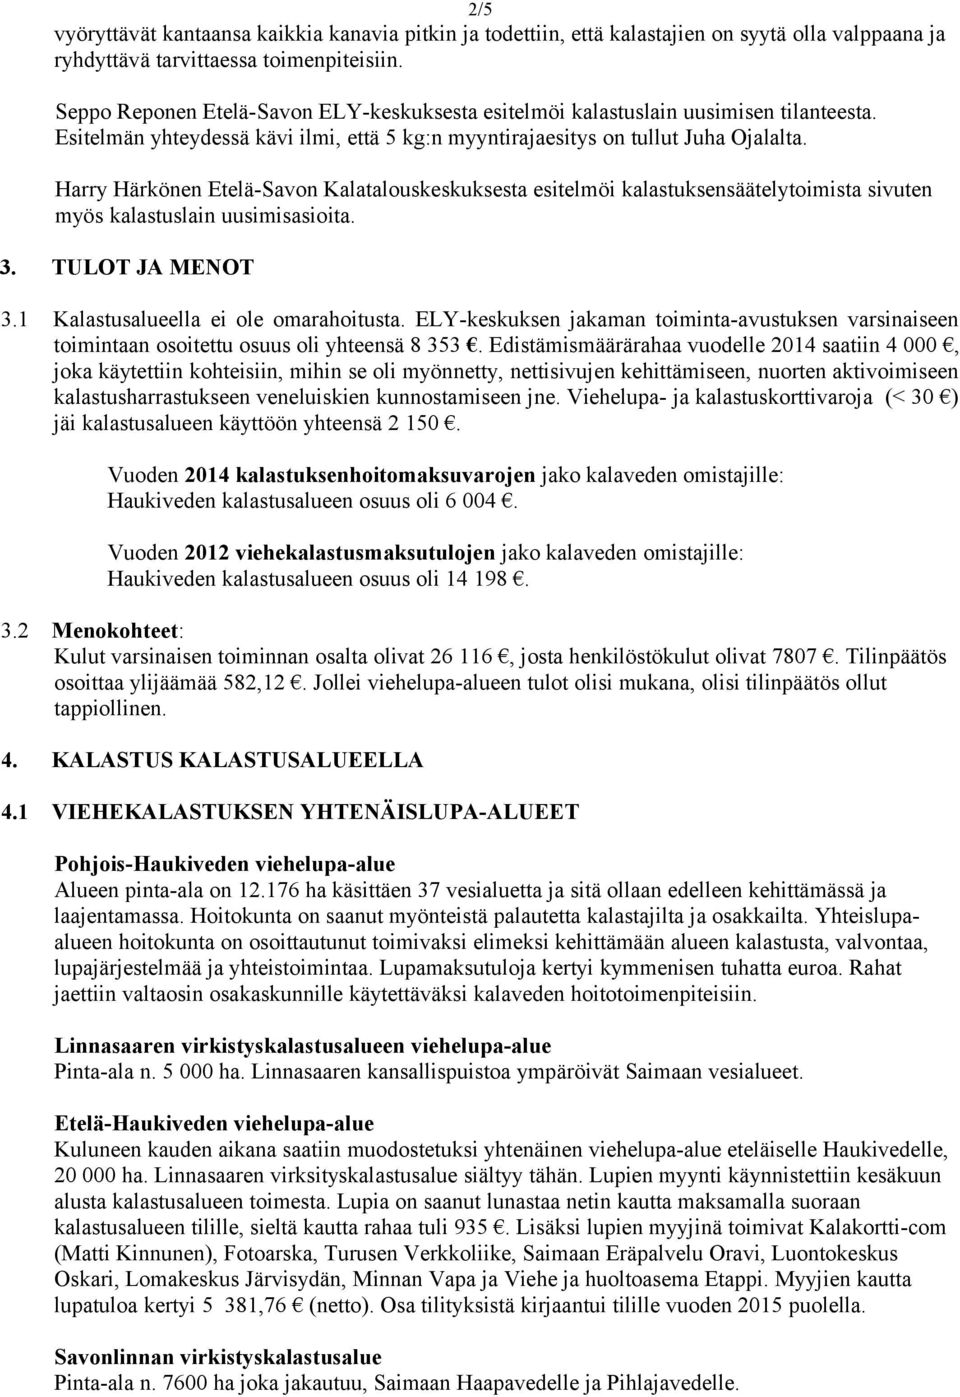 Harry Härkönen Etelä-Savon Kalatalouskeskuksesta esitelmöi kalastuksensäätelytoimista sivuten myös kalastuslain uusimisasioita. 3. TULOT JA MENOT 3.1 Kalastusalueella ei ole omarahoitusta.